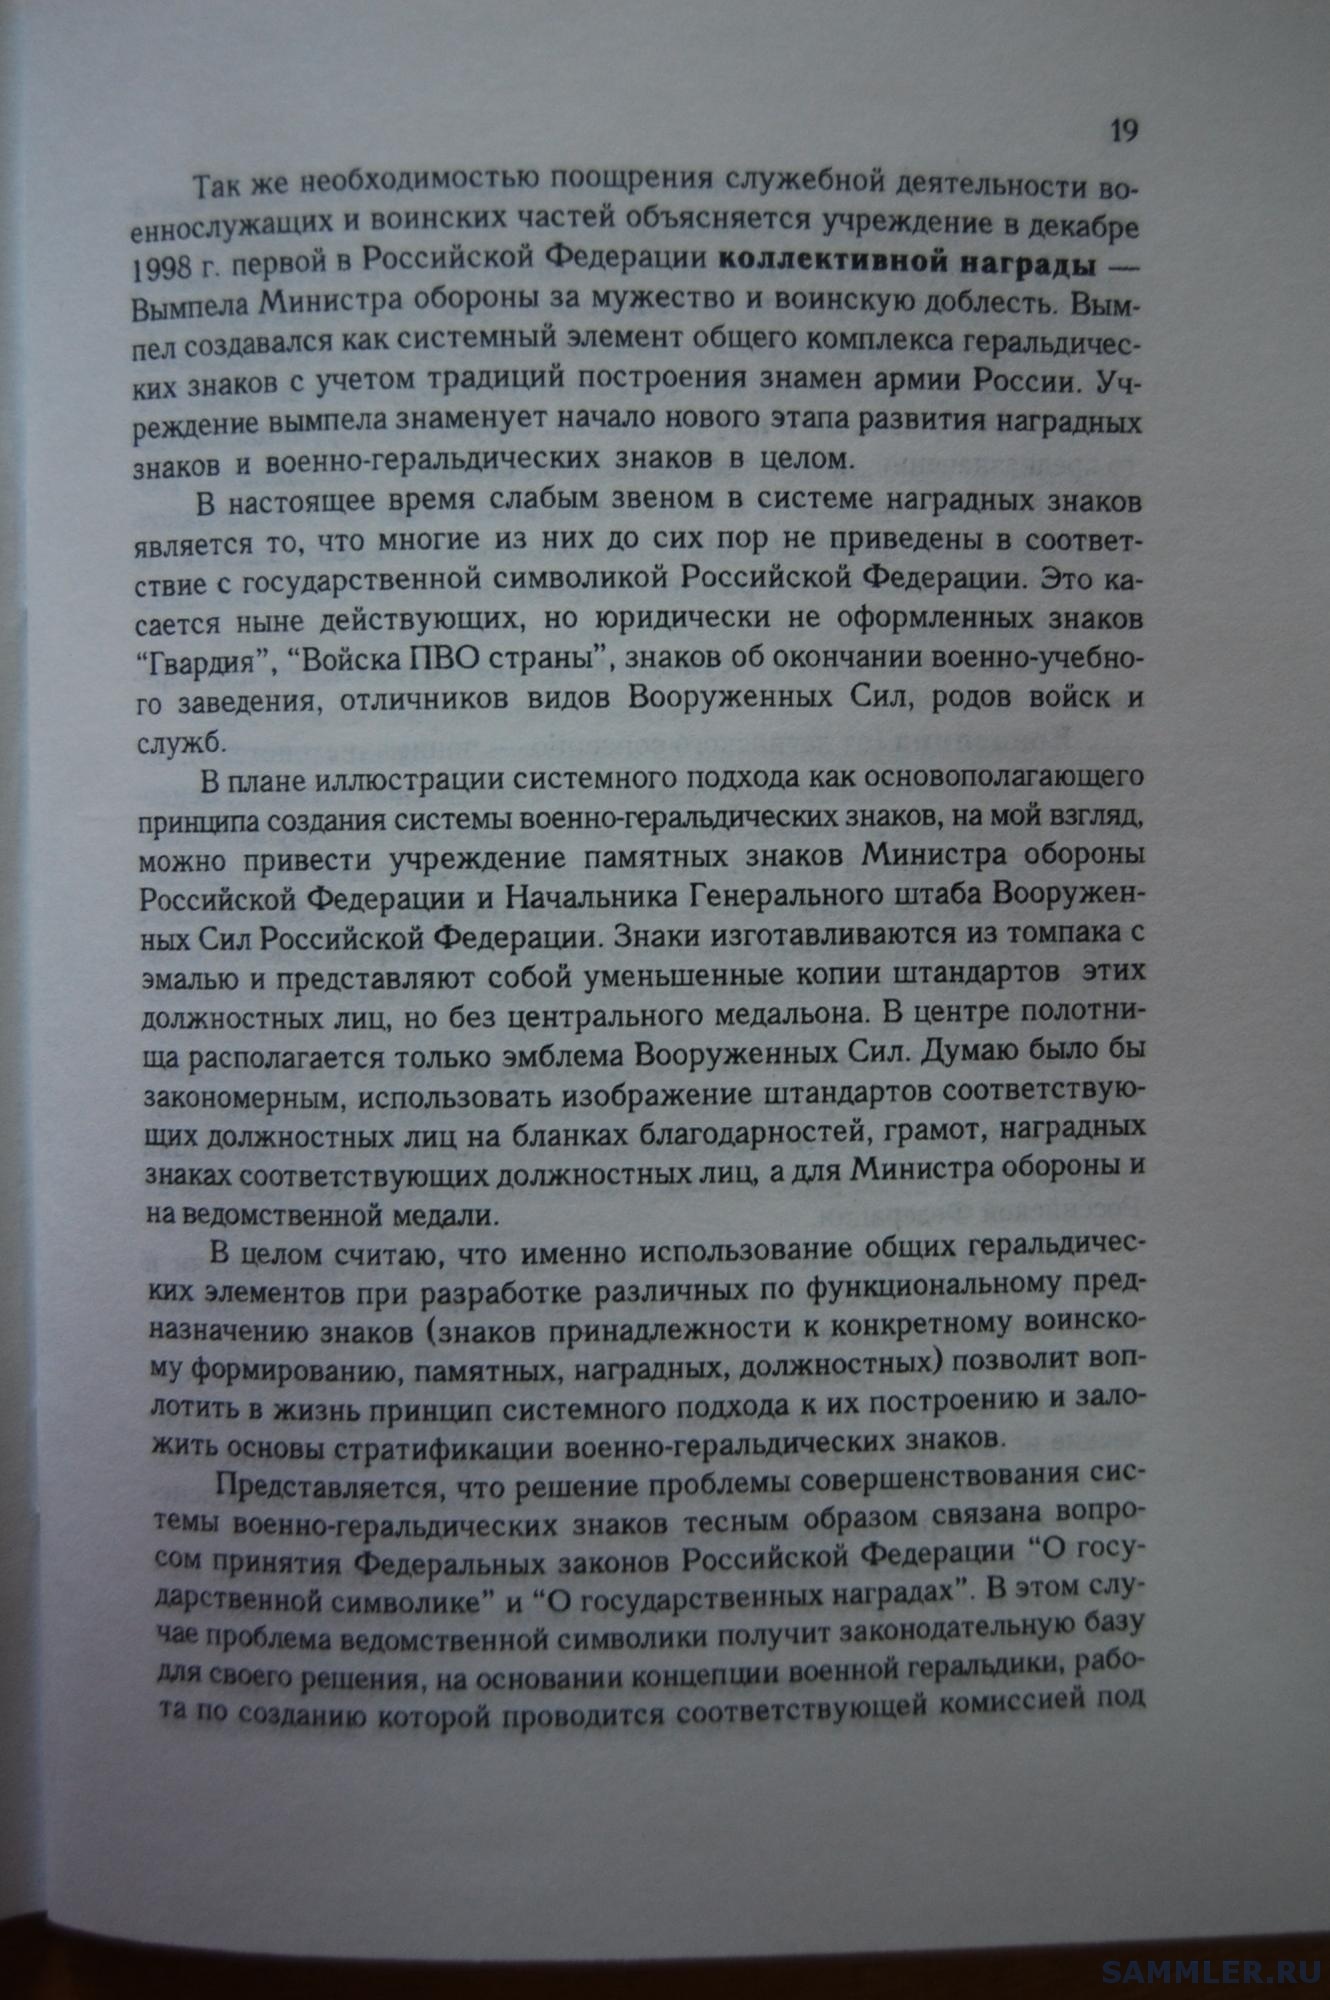 Кузнецов О.В. - Геральдическое обеспечение ВС РФ. М., 1999. С. 19.JPG